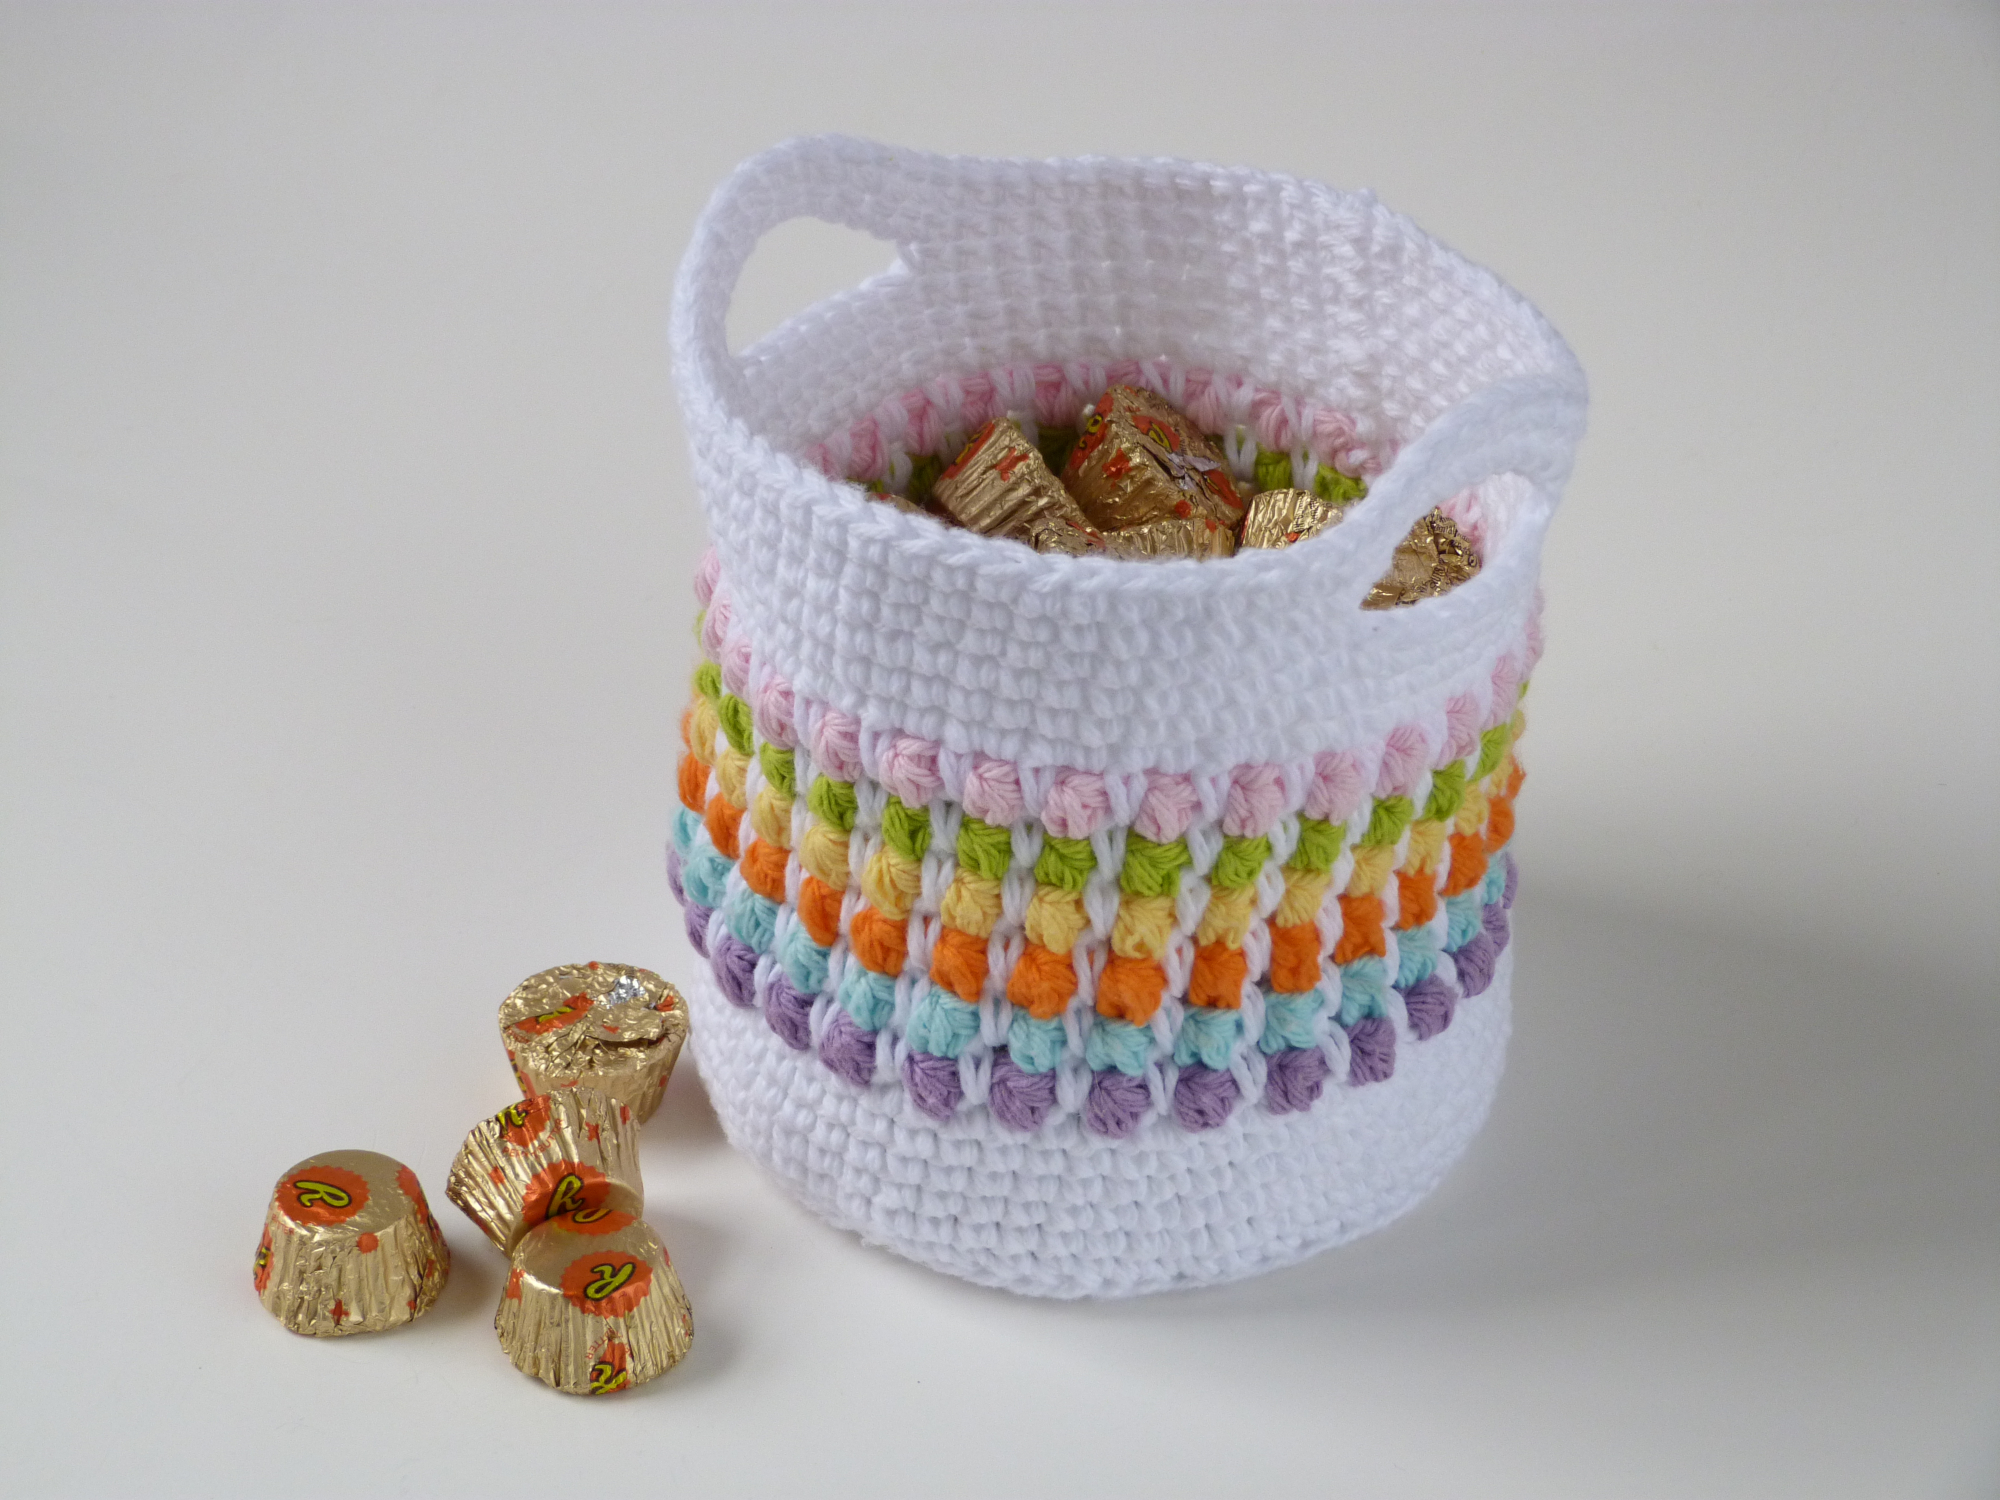 Large Crochet Bowl Crochet pattern by Rachel Beth